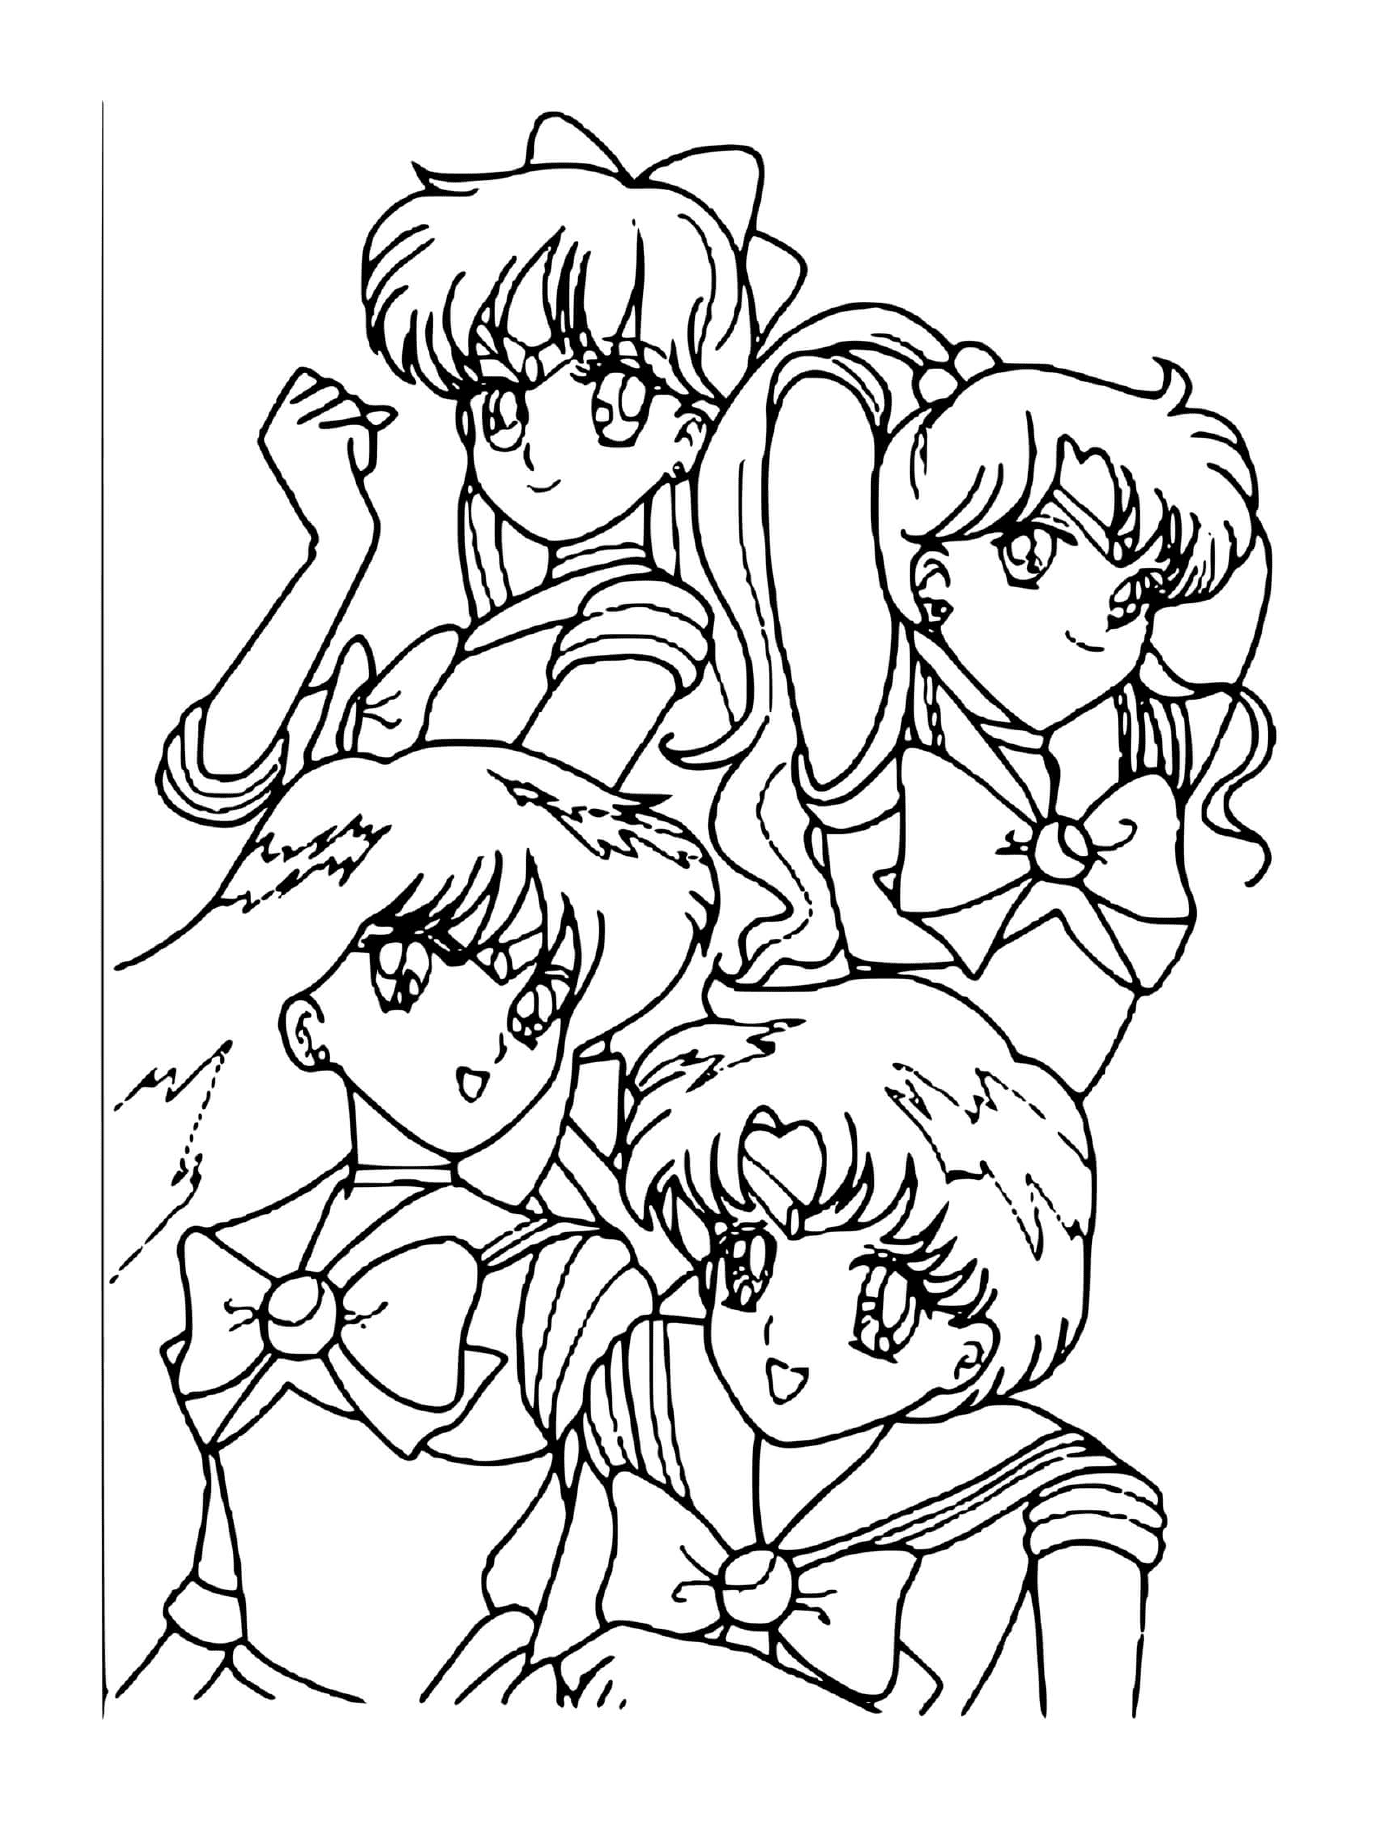  Gruppe von Menschen zusammen mit Sailor Moon 